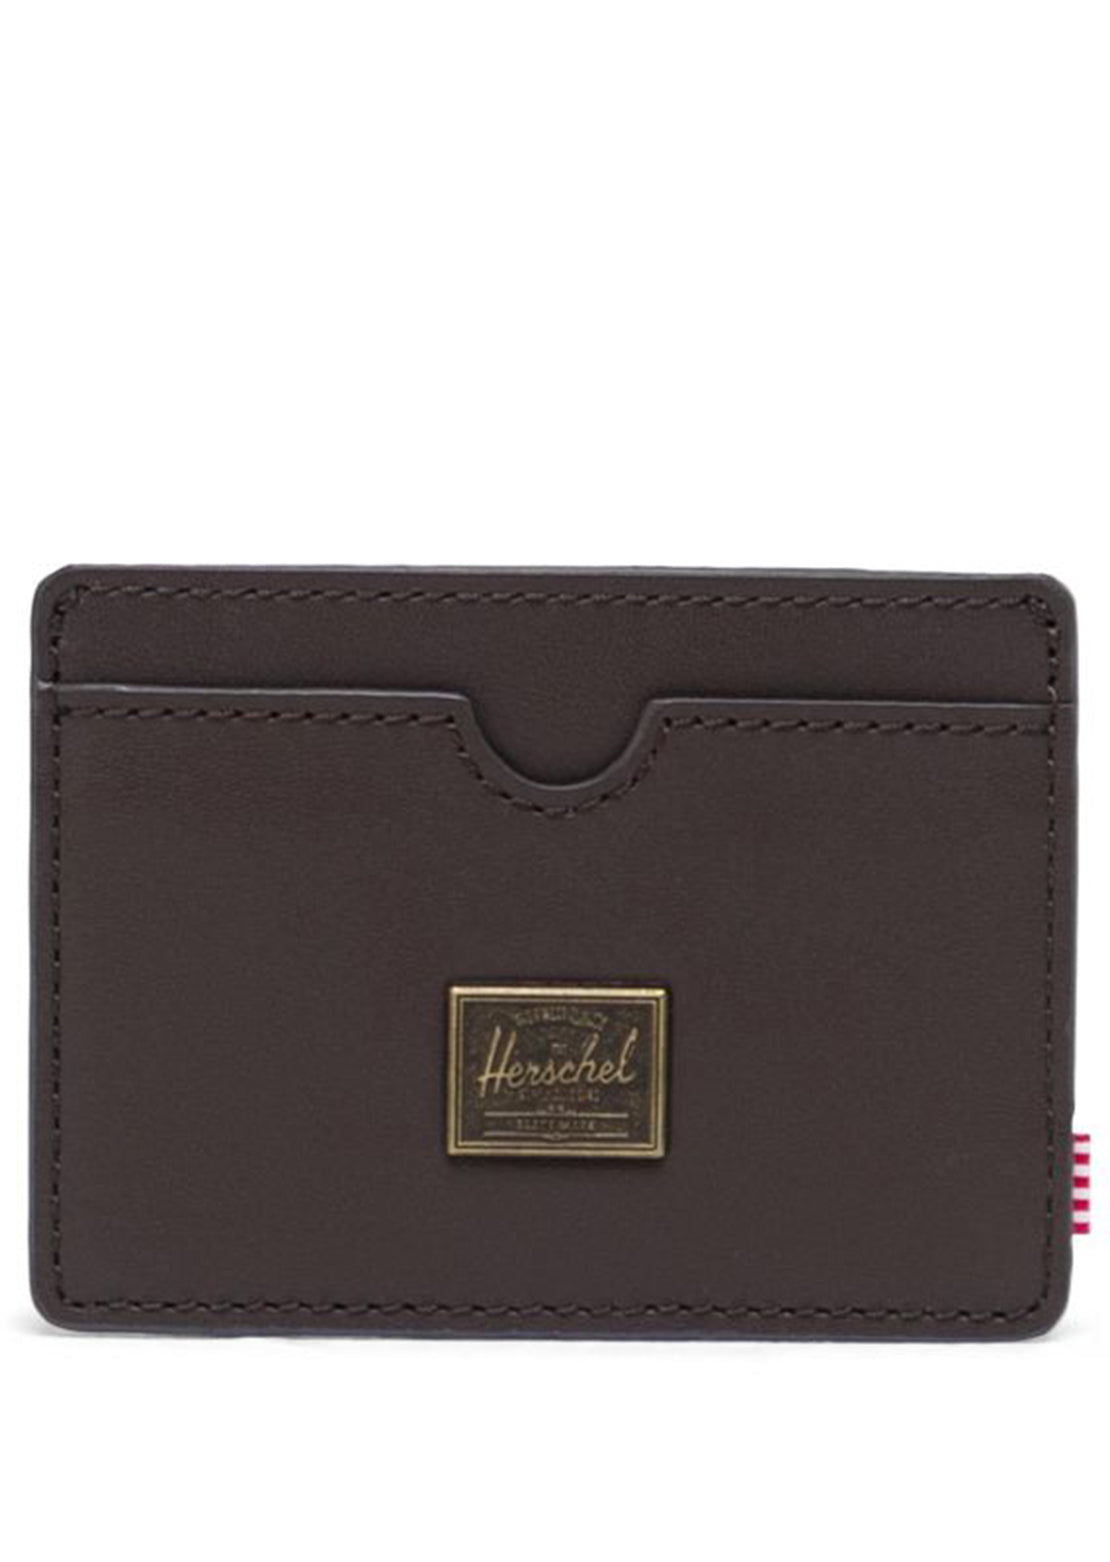 Herschel Charlie Leather Wallet Brown